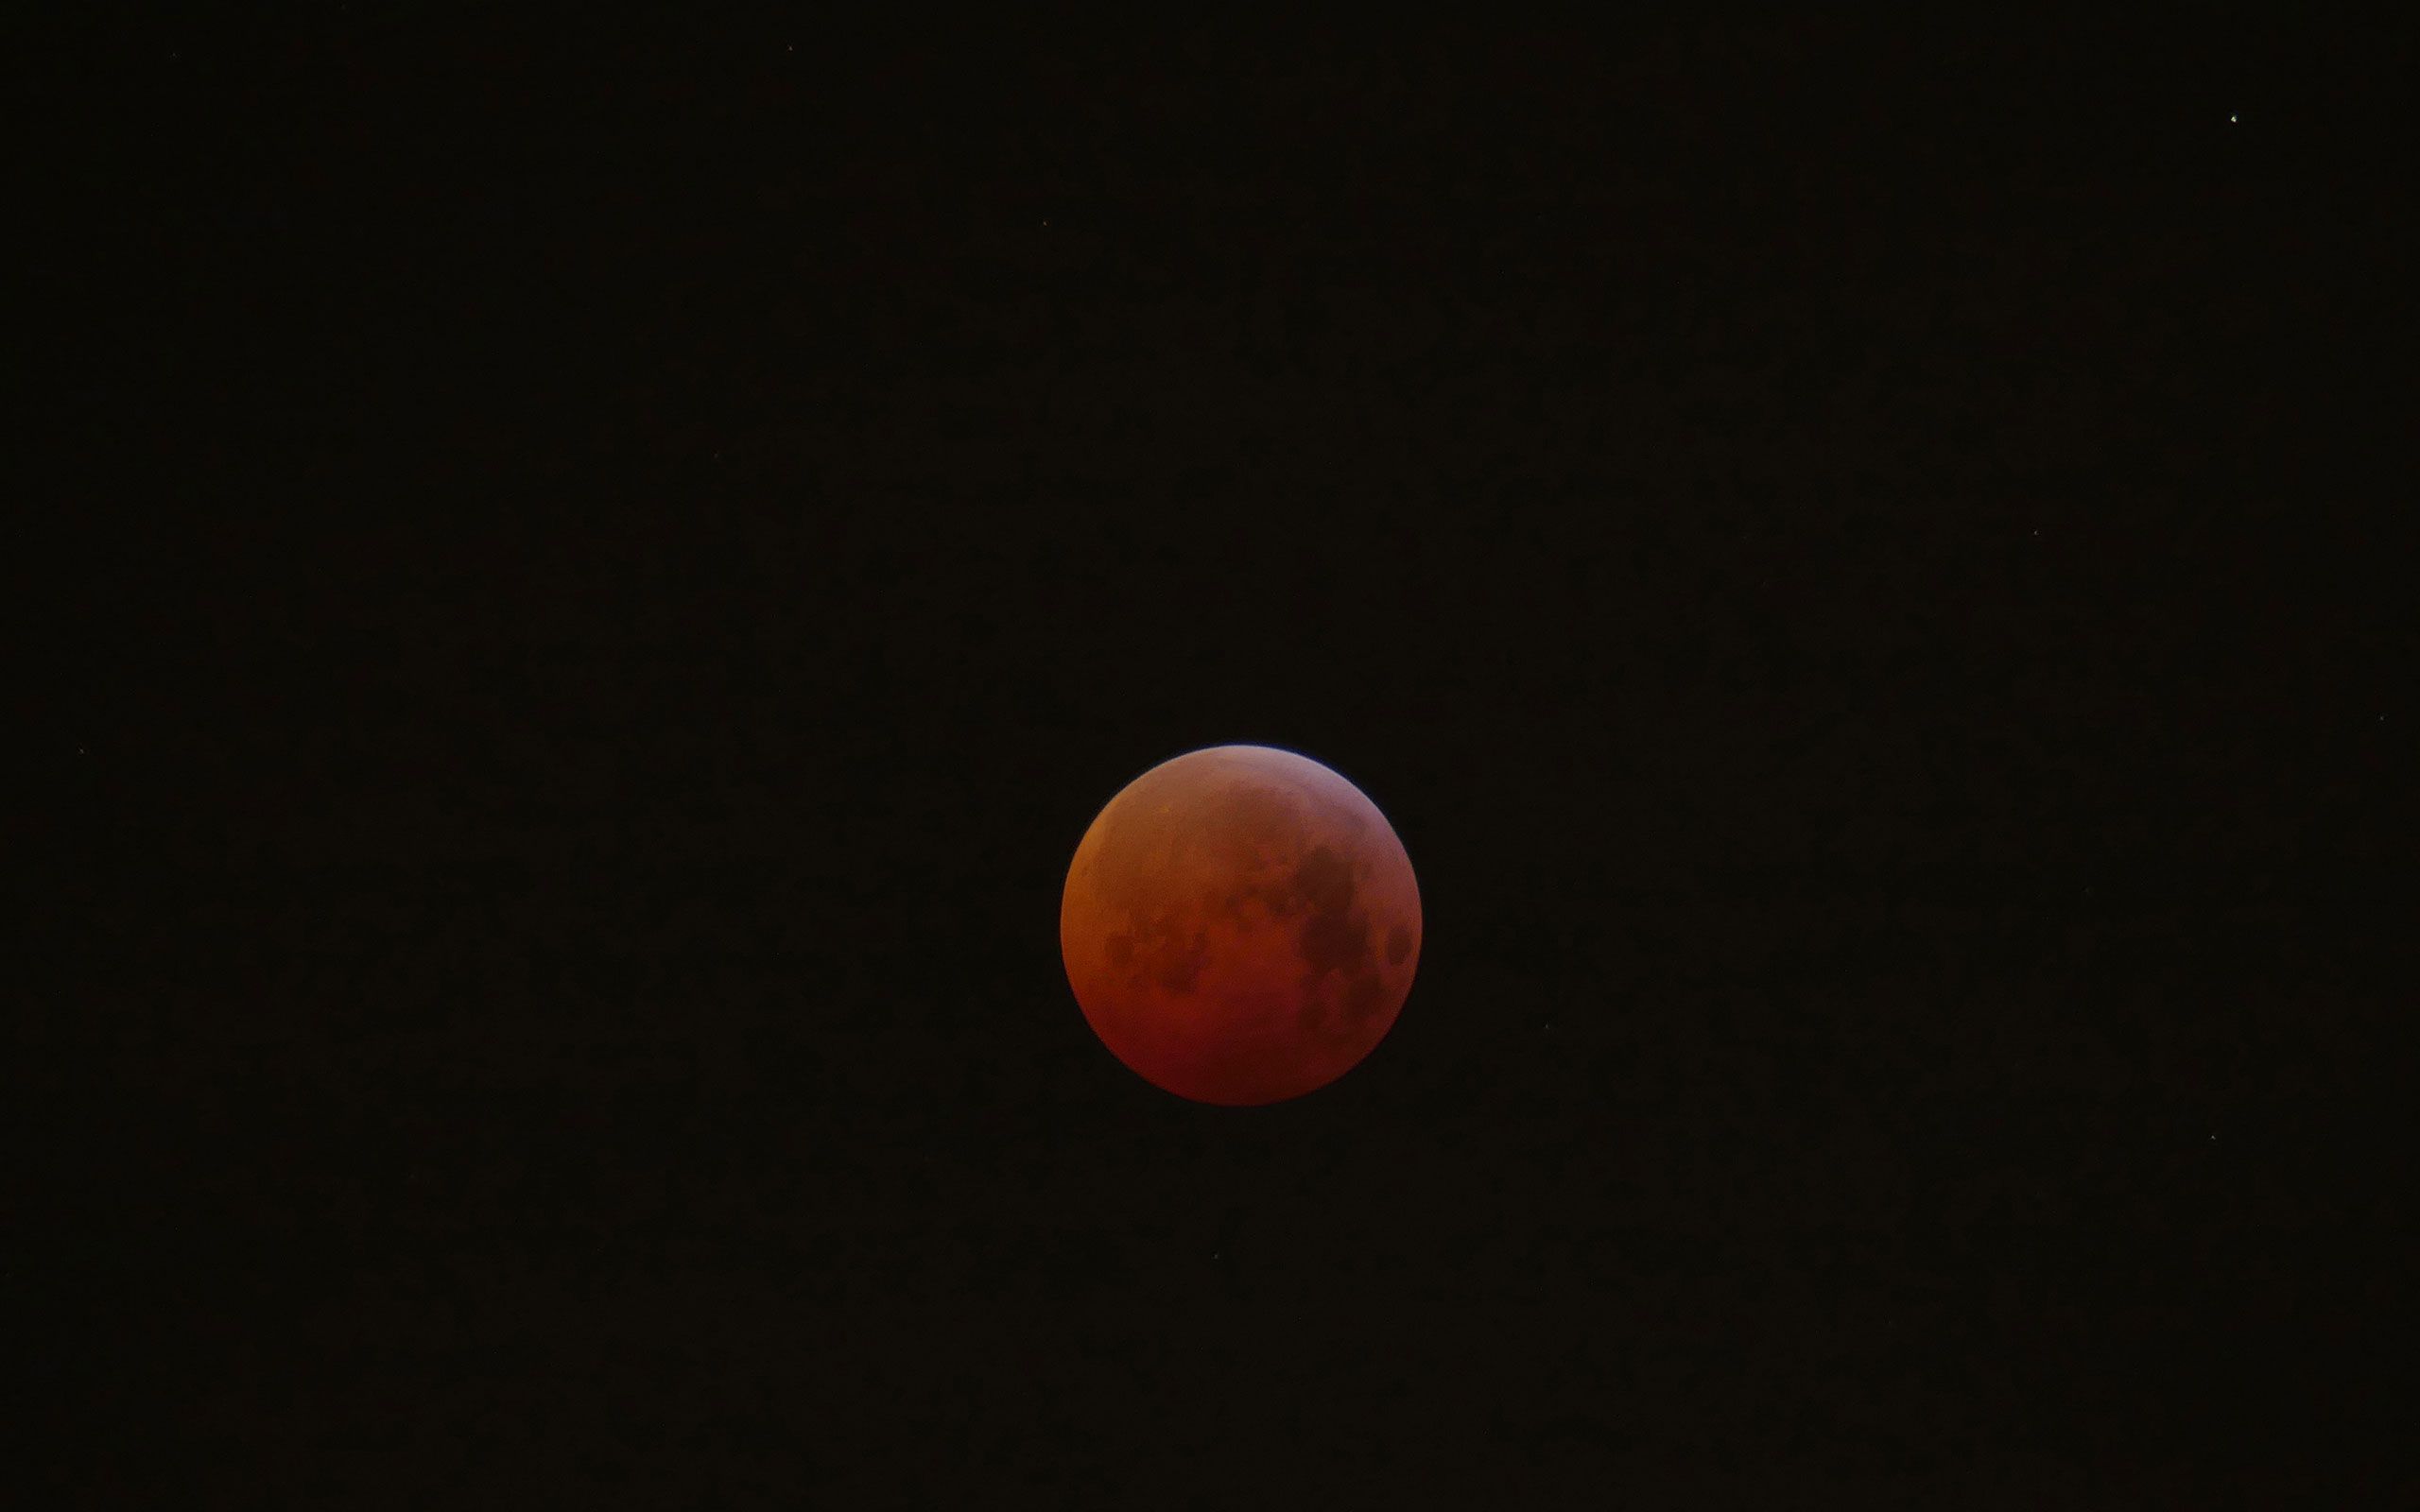 Bild des Mondes während der Mondfinsternis, der Mond leuchtet rot